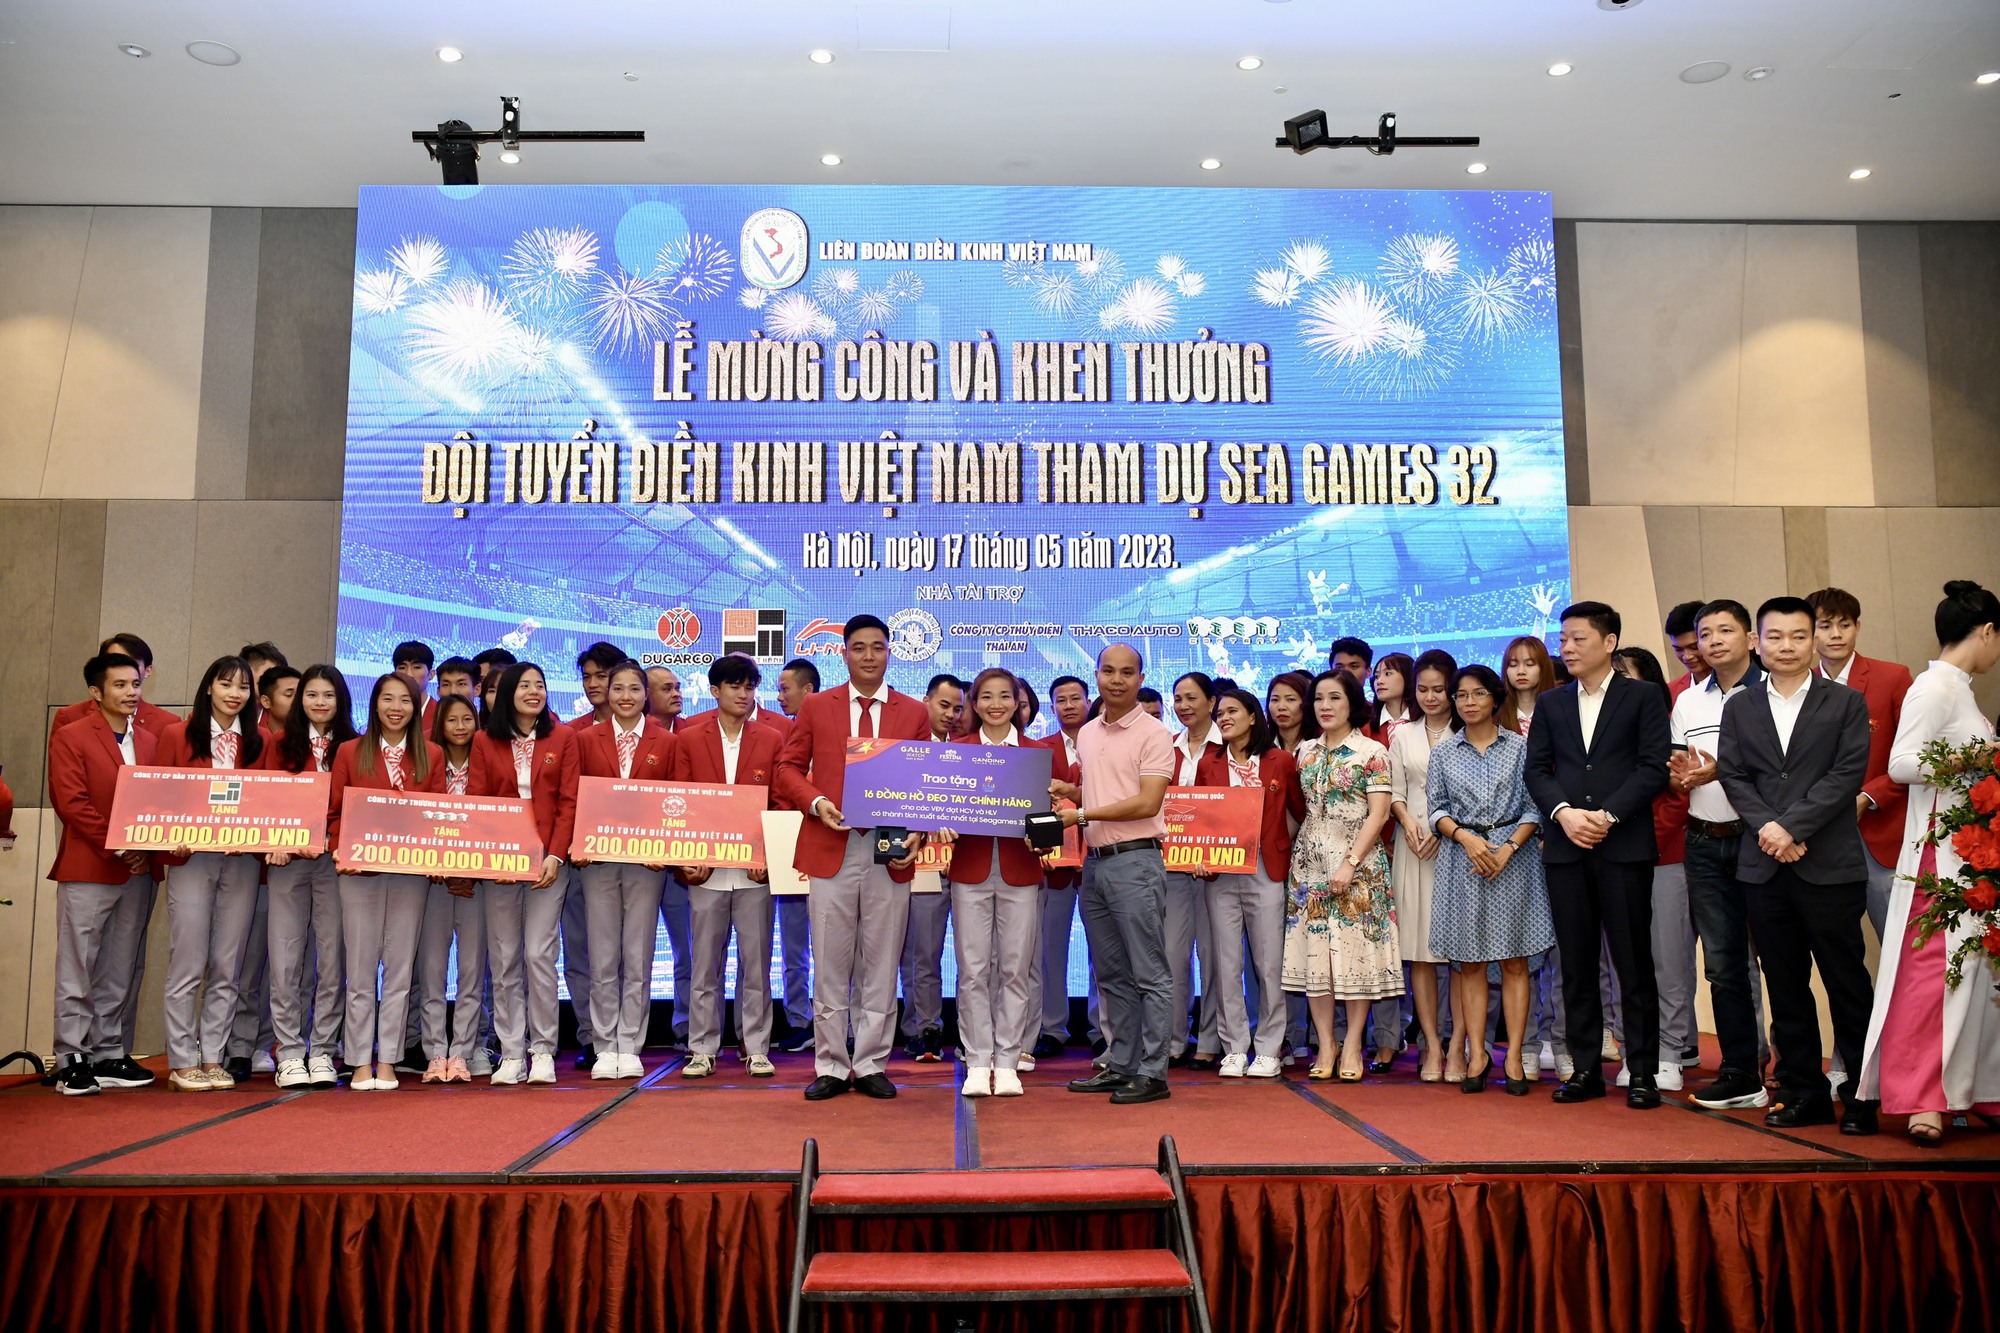 Nguyễn Thị Oanh và đội điền kinh Việt Nam nhận mưa tiền thưởng sau vinh quang SEA Games 32 - Ảnh 1.